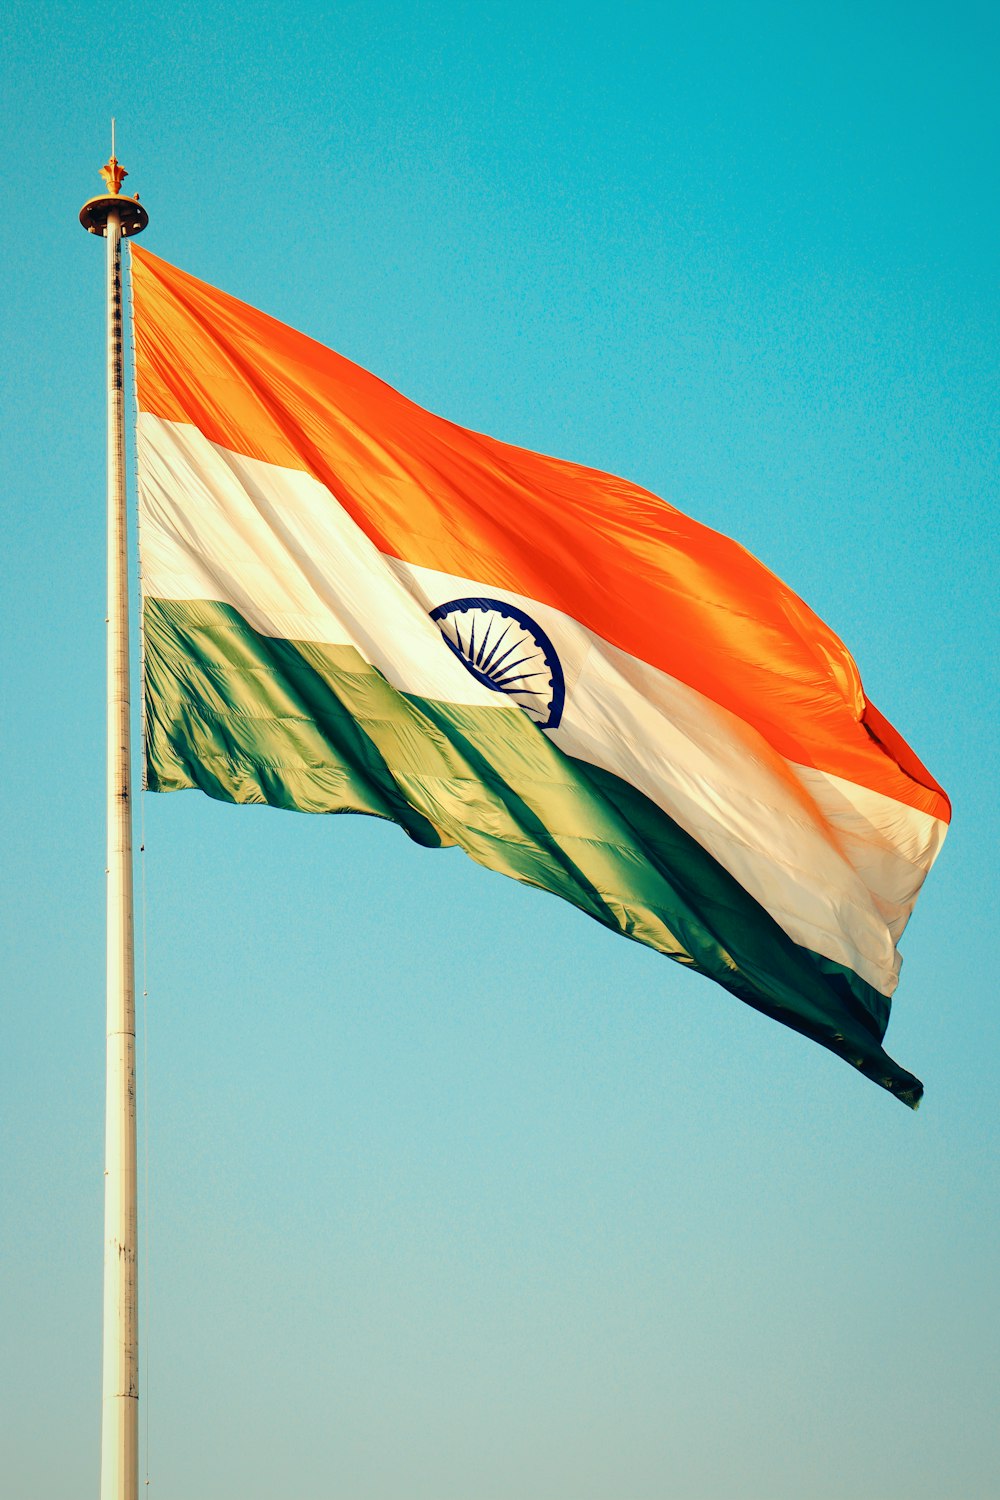 a bandeira indiana está voando alto no céu